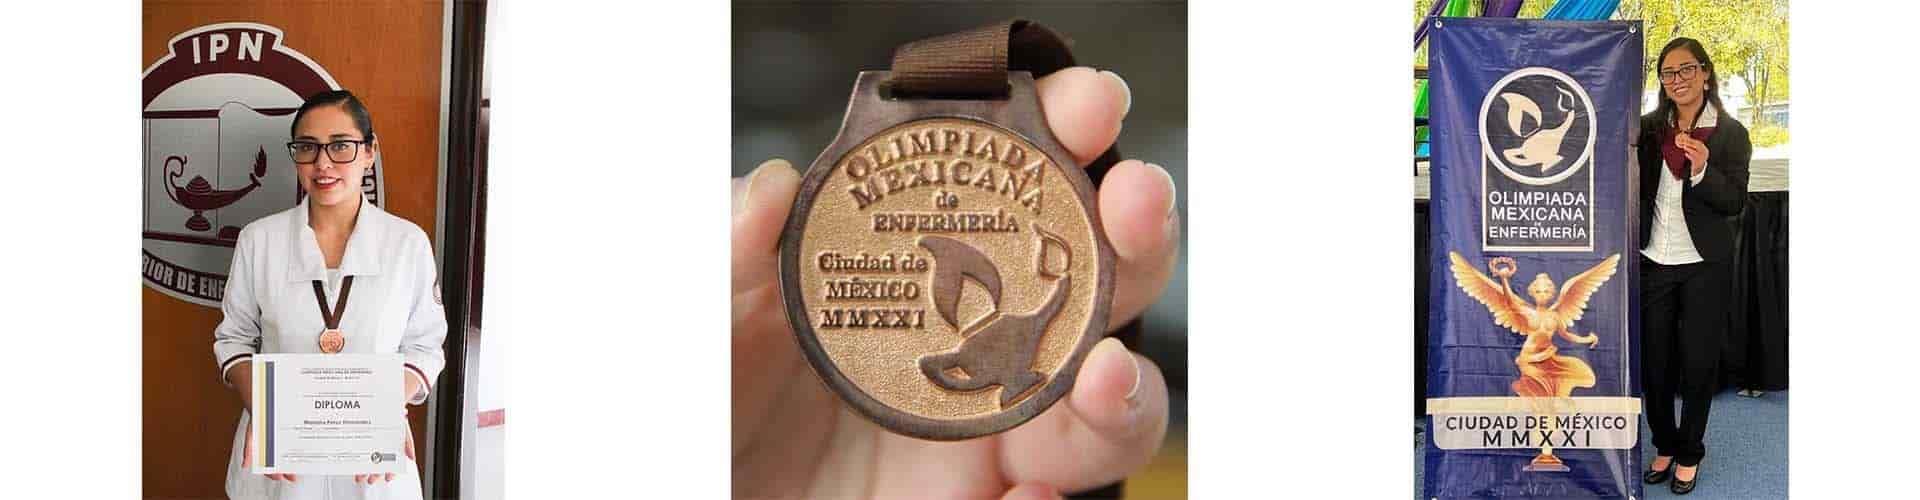 Obtiene tercer lugar en la Olimpiada Mexicana de Enfermería